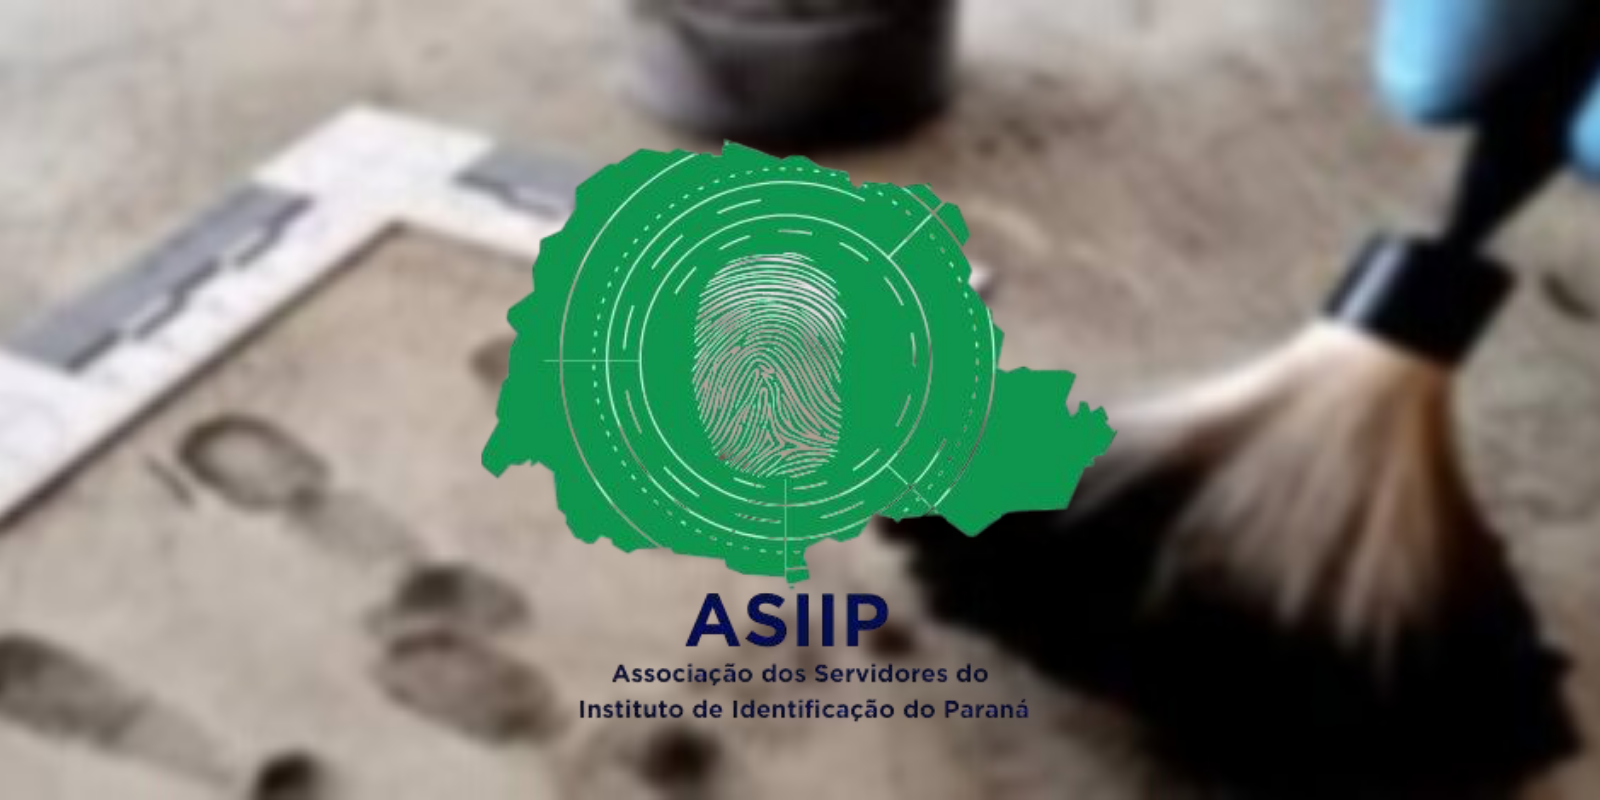 ASIIP - Associação dos Servidores do Instituto de Identificação do 